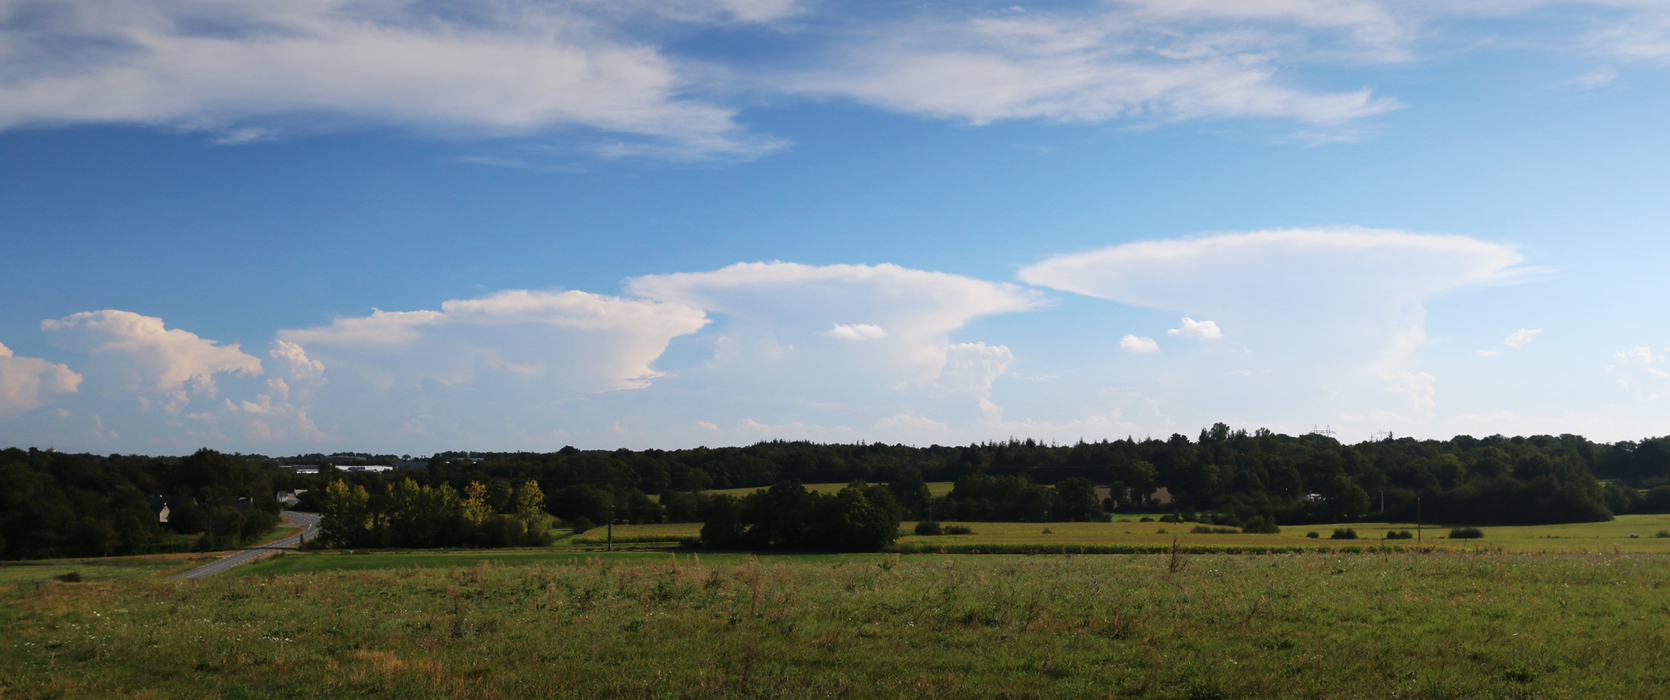 Photo de cumulonimbus. On observe trs bien la forme d'enclume de ses nuages, c'est  dire tal  son sommet et plus fin en dessous.